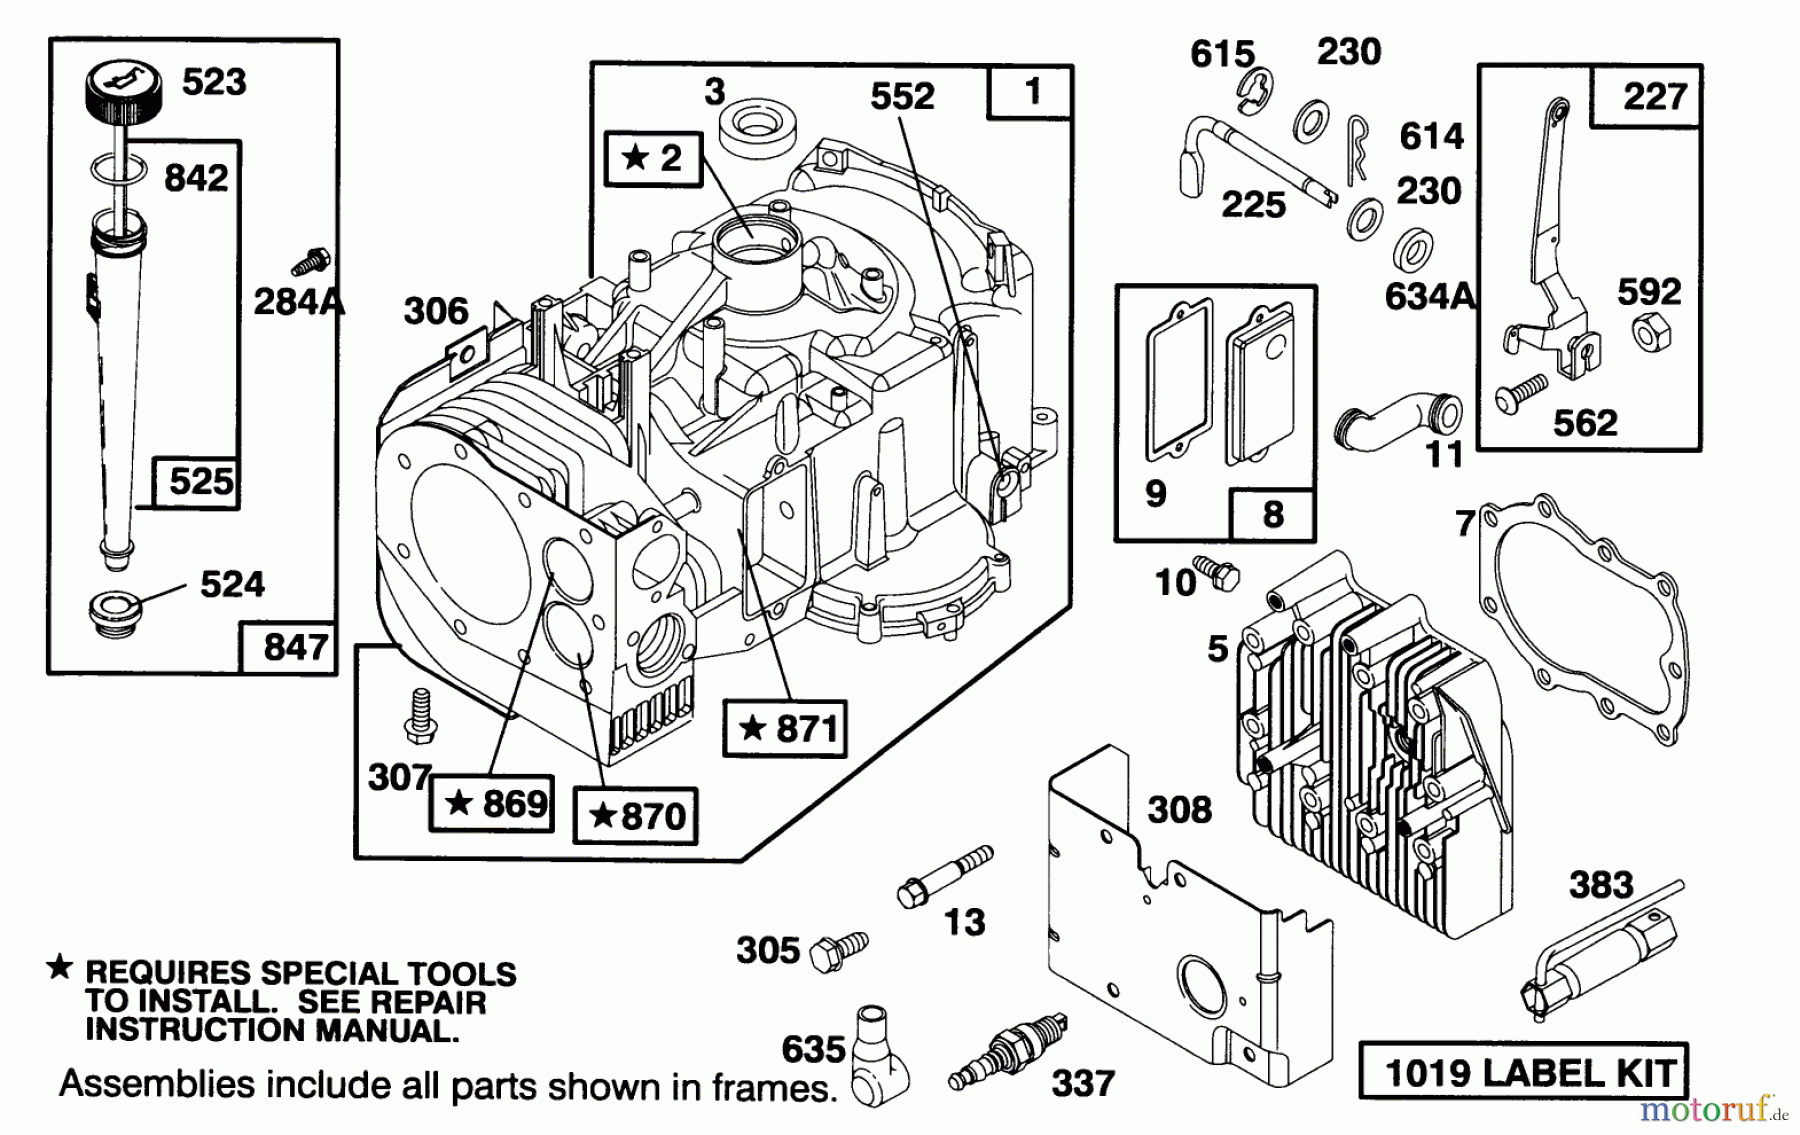  Toro Neu Mowers, Lawn & Garden Tractor Seite 1 71213 (13-38HXL) - Toro 13-38HXL Lawn Tractor, 1994 (4900001-4999999) ENGINE BRIGGS & STRATTON MODEL 28M707-0122-01 #1